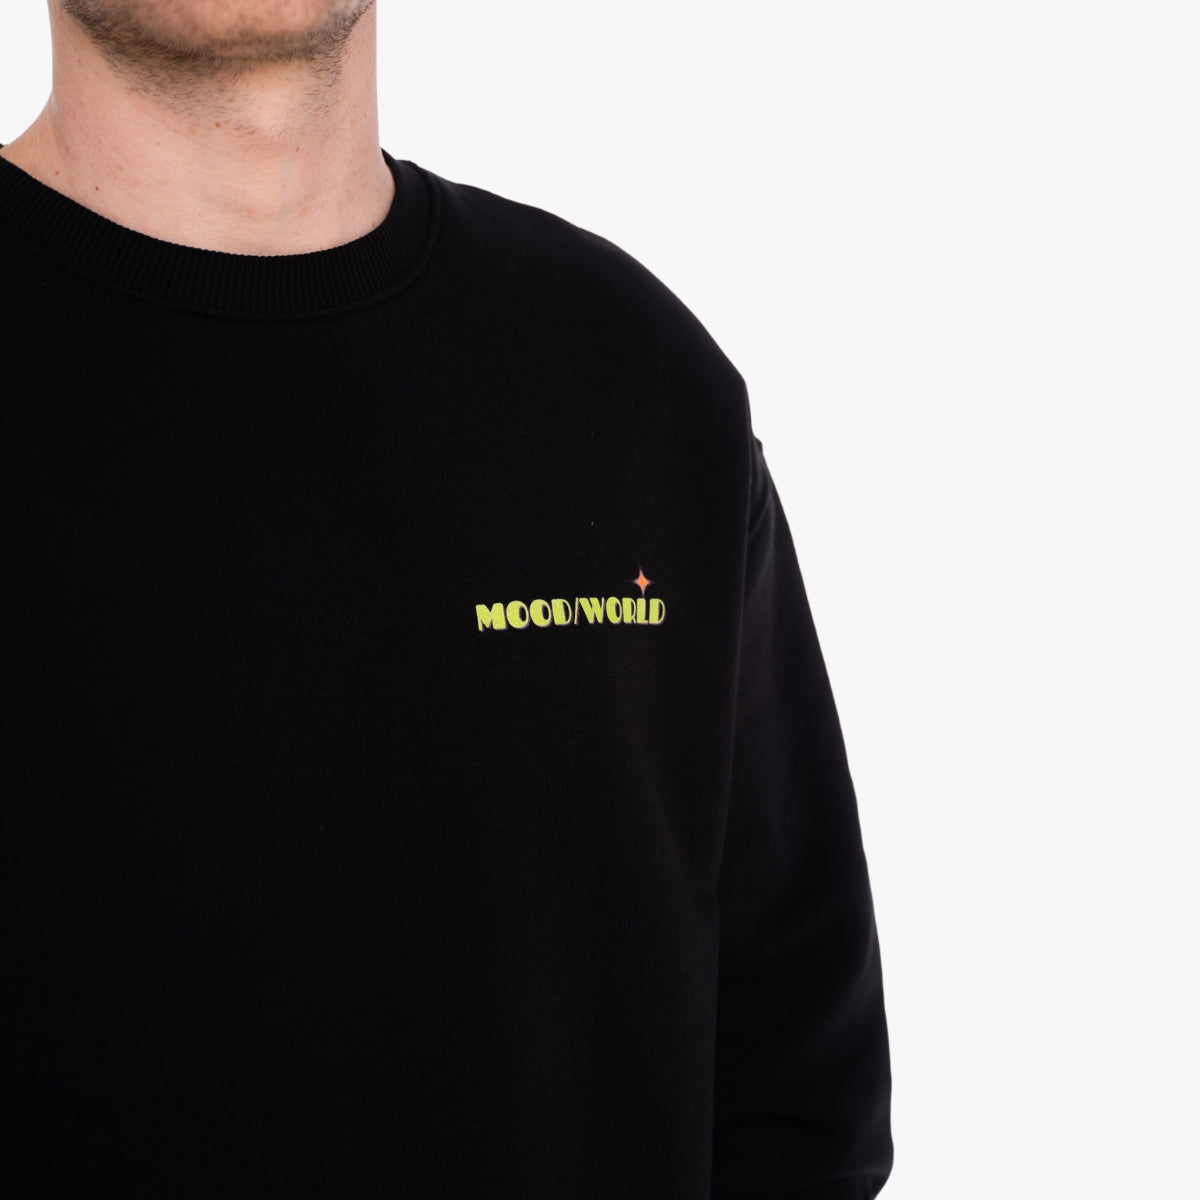 'WHISH YOU' Organic Oversize Sweatshirt in der Farbe Black als Front Detailaufnahme getragen von einem männlichen Model